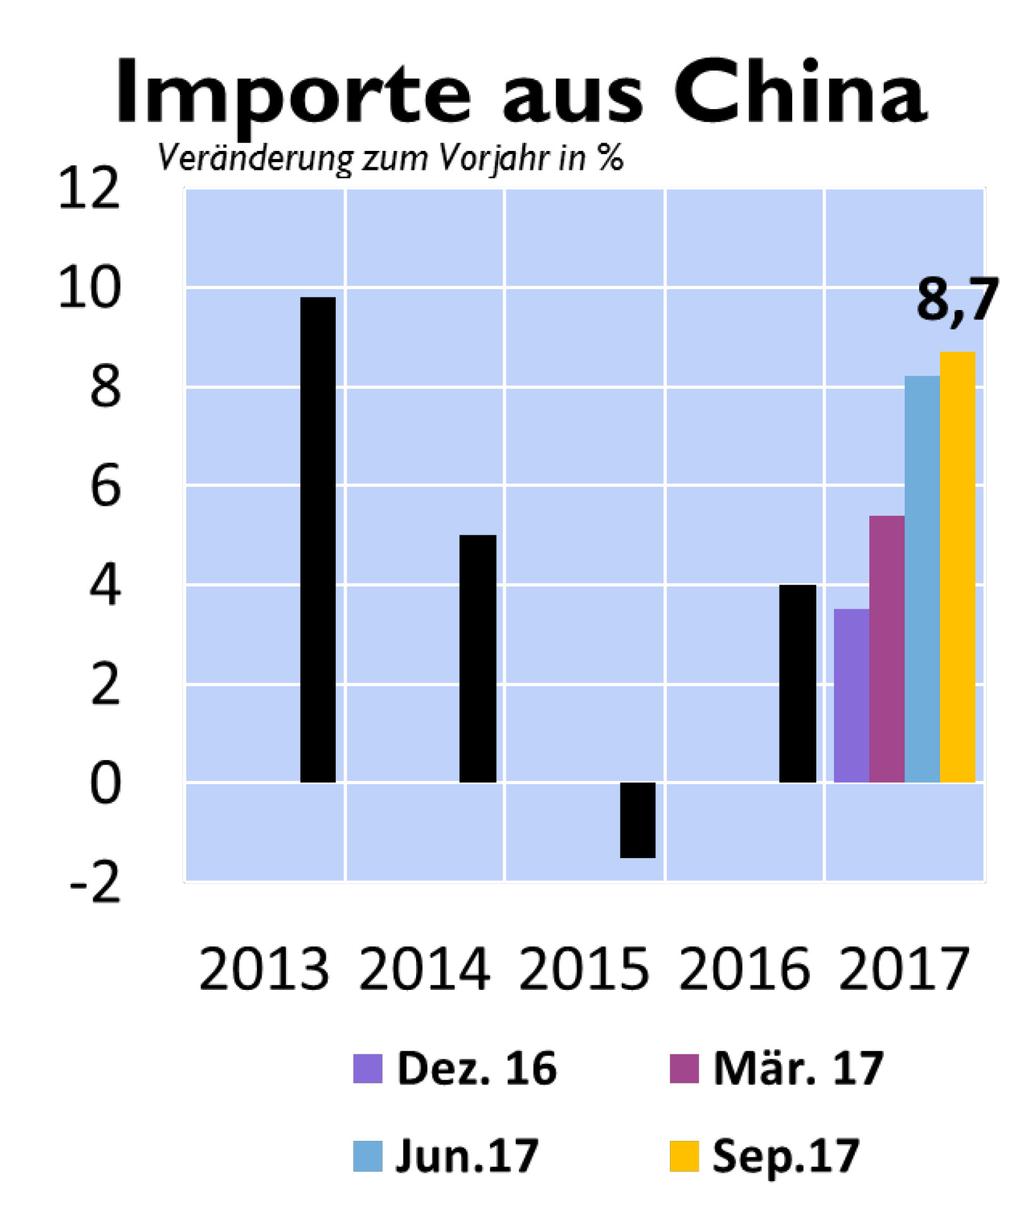 Exportwachstumsbeschleunigung 1/3 geht auf höhere CN-Importe zurück; 1/5 geht auf die